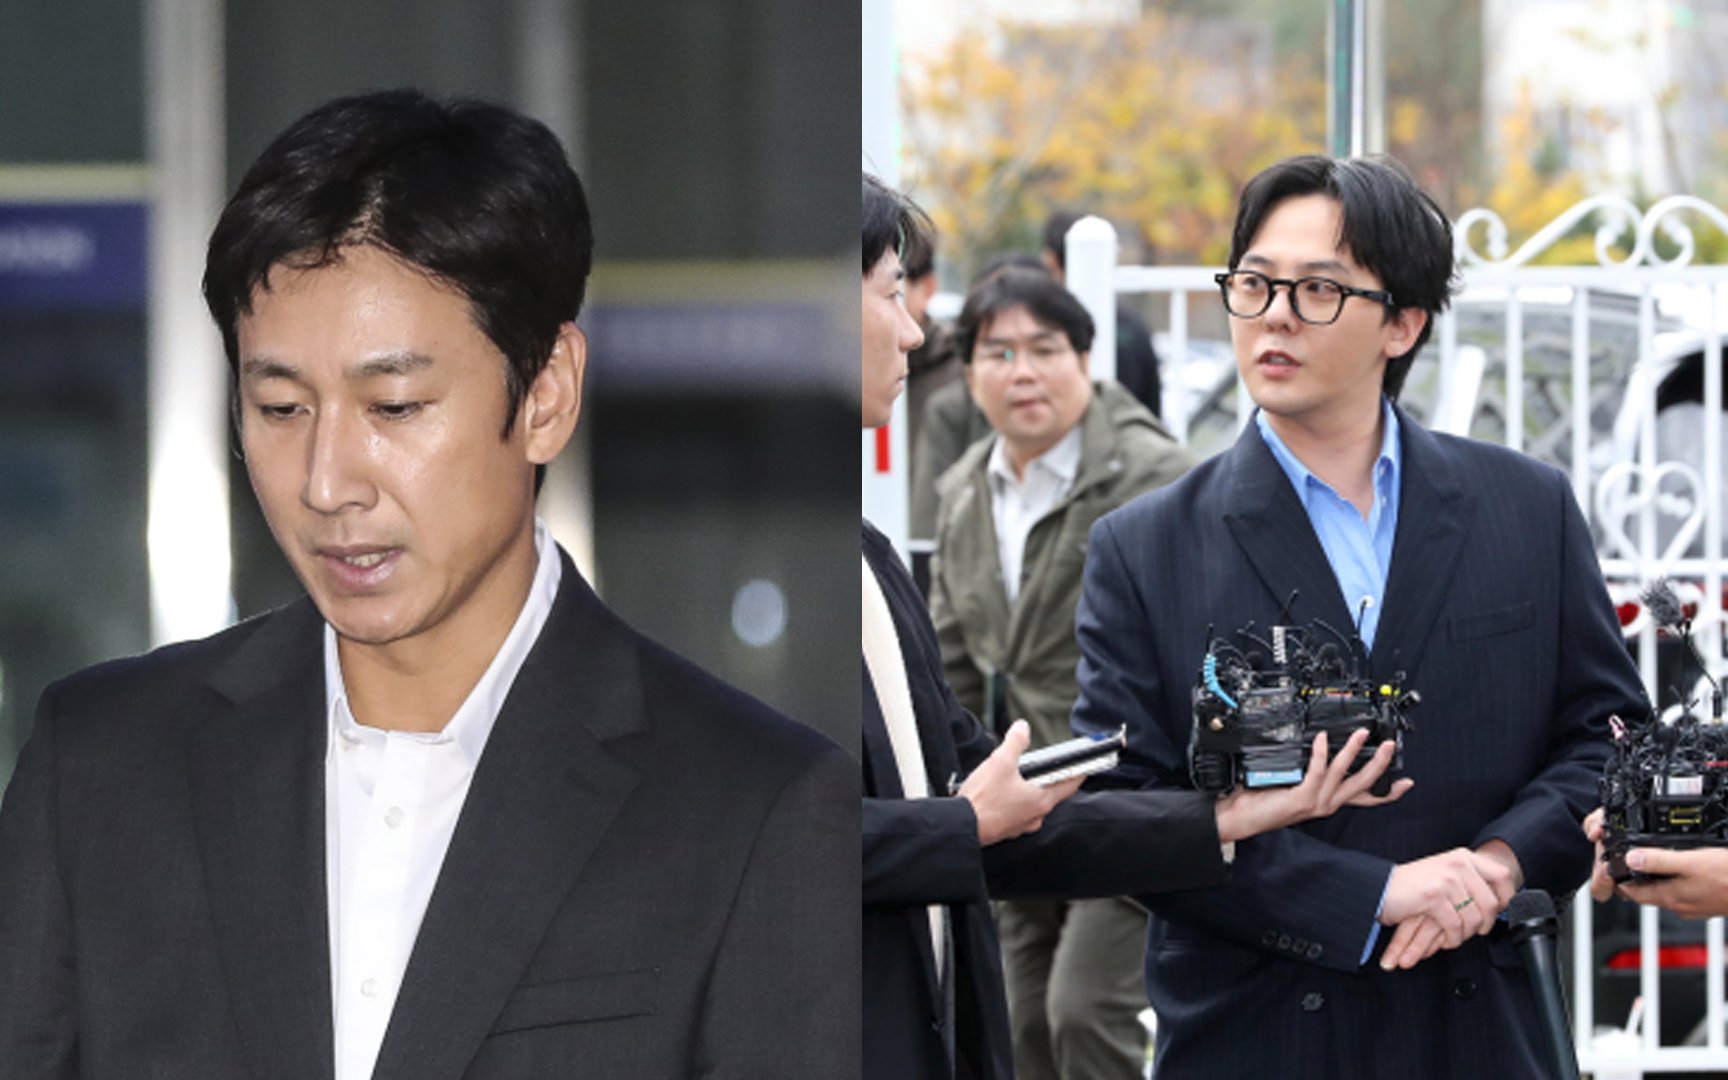 La policía enfrenta una reacción violenta por la investigación intensiva sobre Lee Sun Gyun y G-Dragon en medio de la falta de pruebas concretas